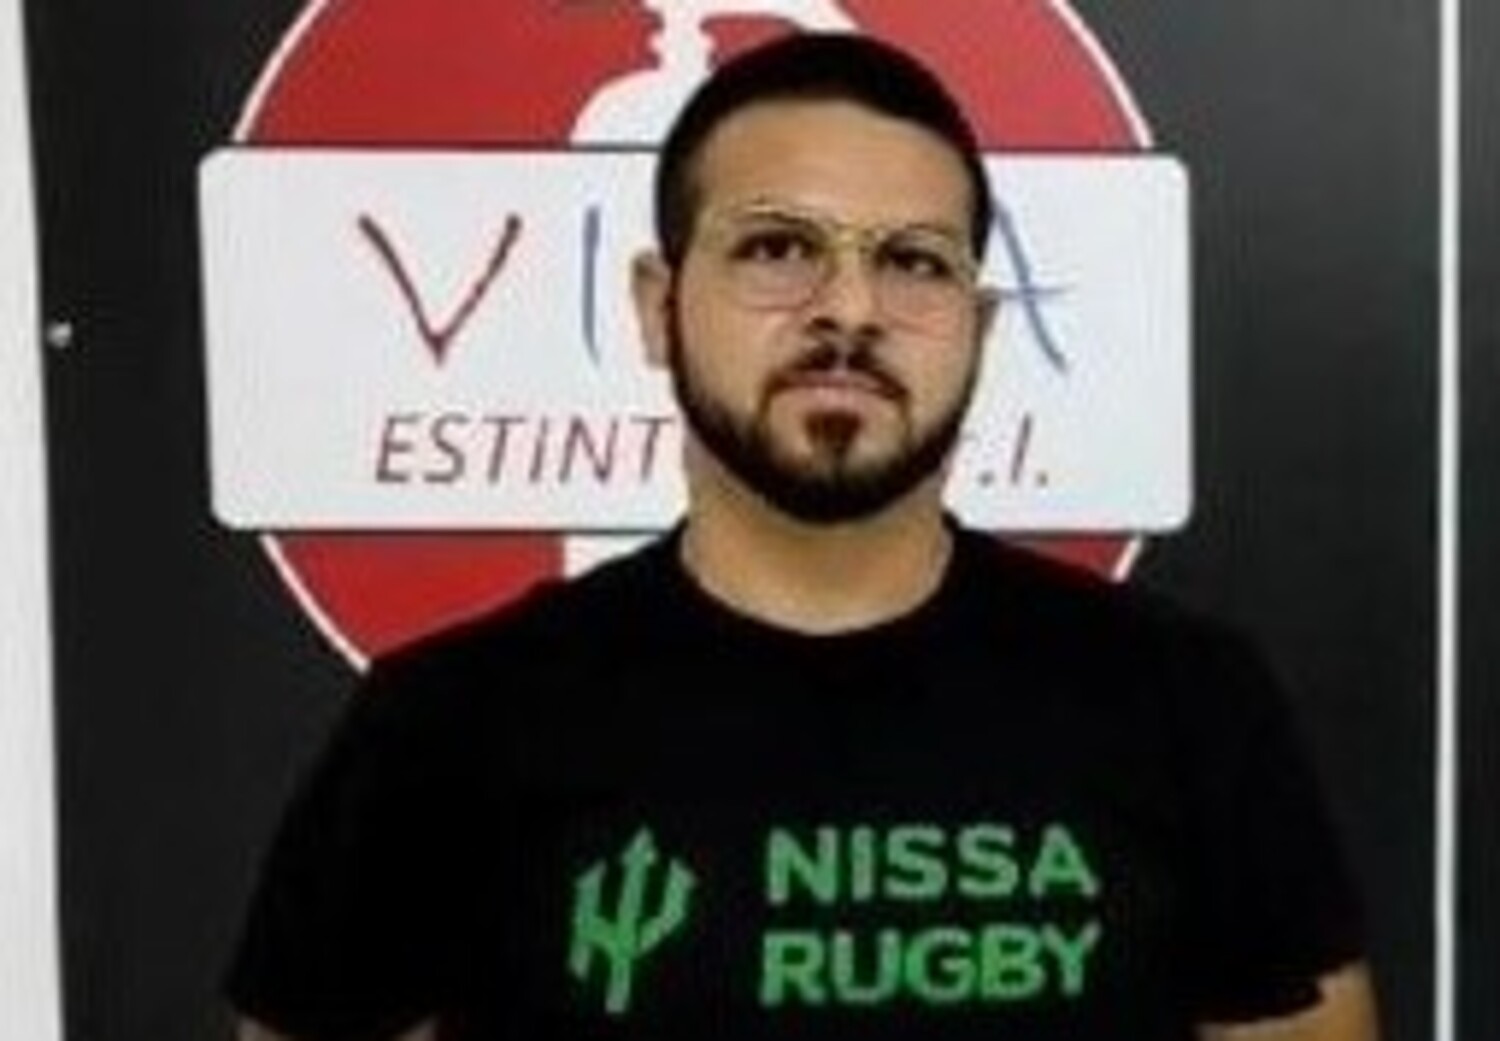 Nissa Rugby in trasferta a Ragusa. Il capitano Antony Bruno: “Serve una marcia in più”